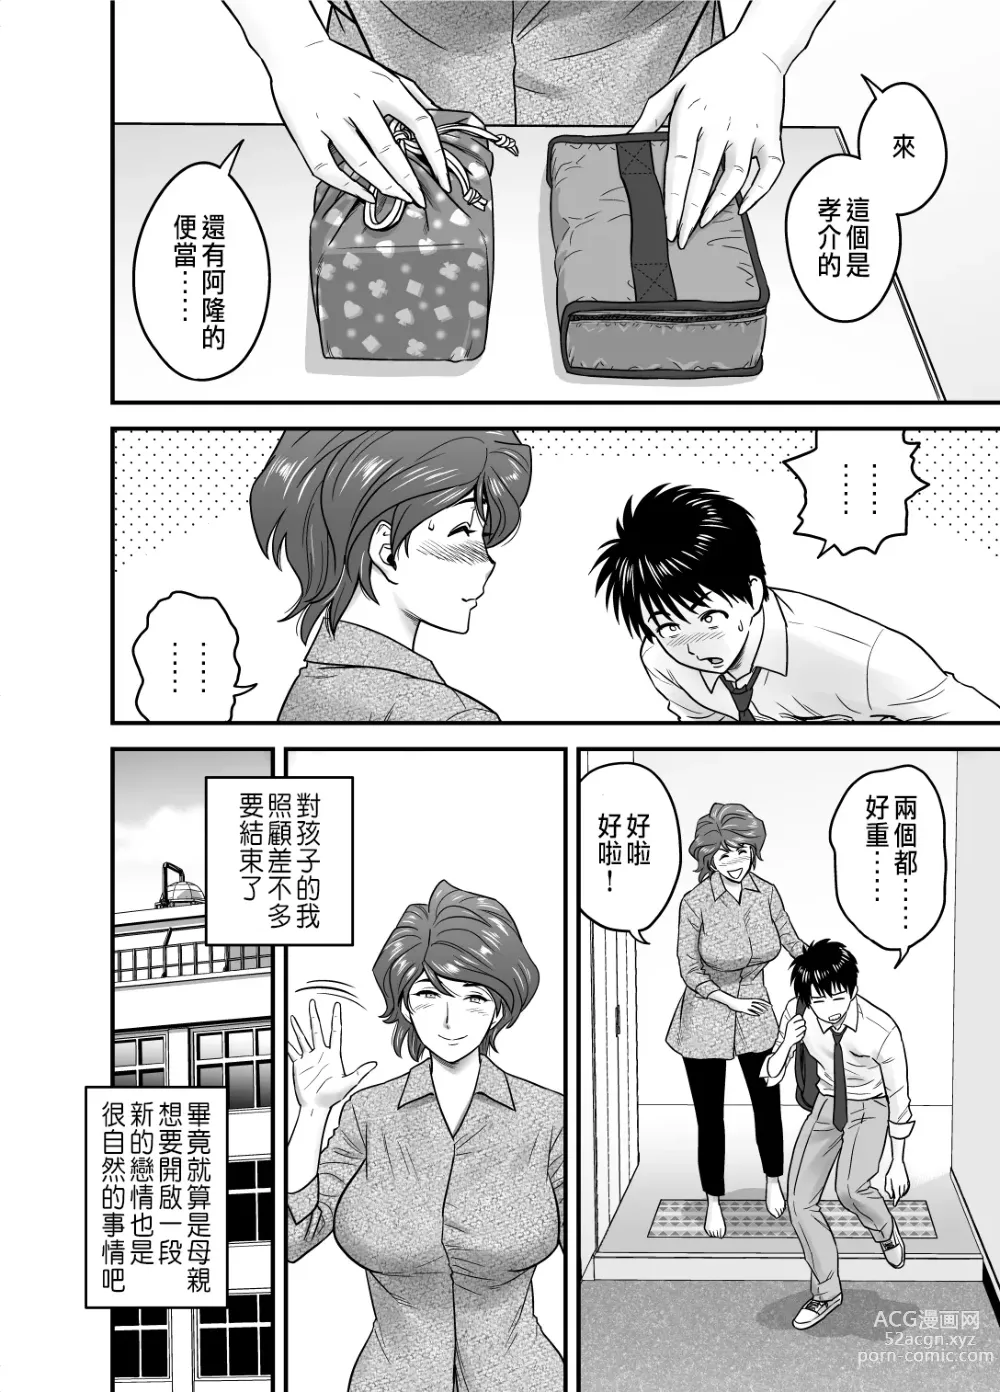 Page 16 of manga 母が友カノになったので1~3